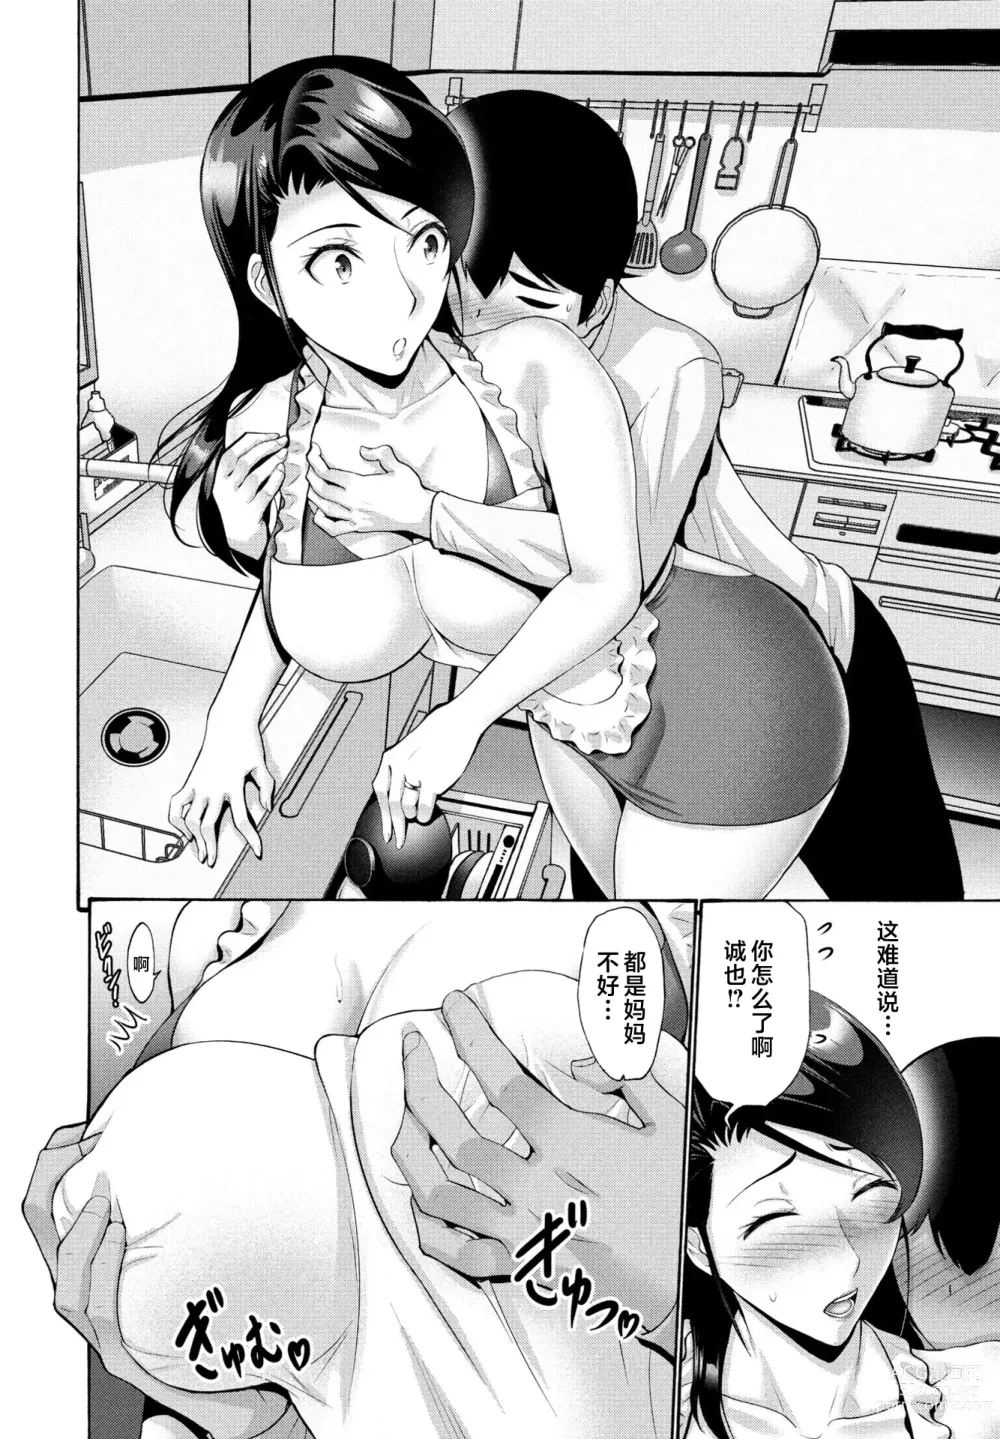 Page 4 of manga Hamayuri Club Ch. 1-3